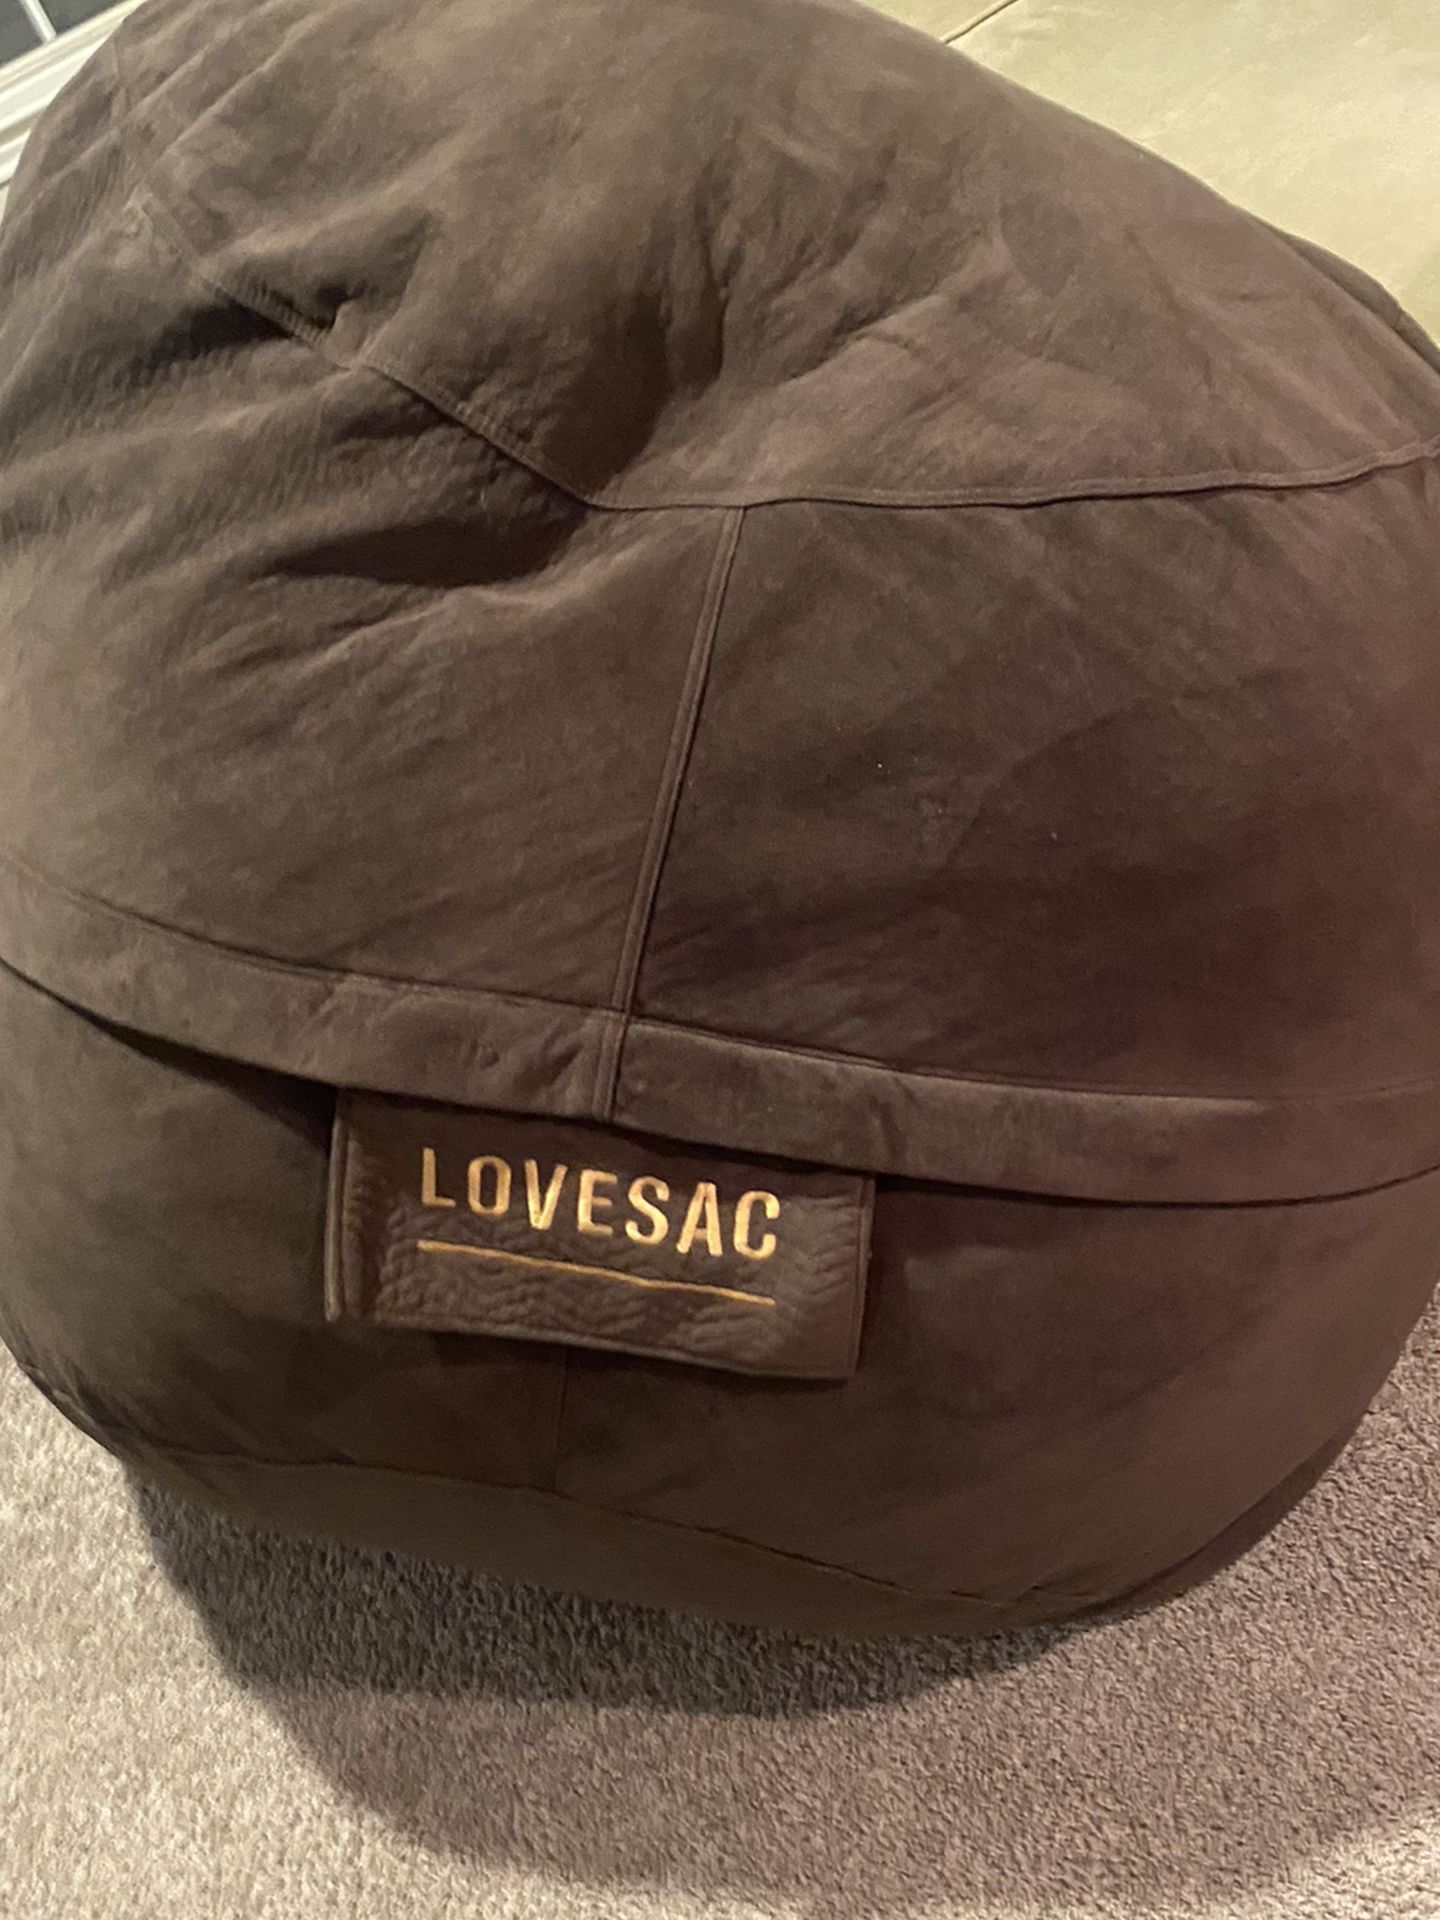 Love sac